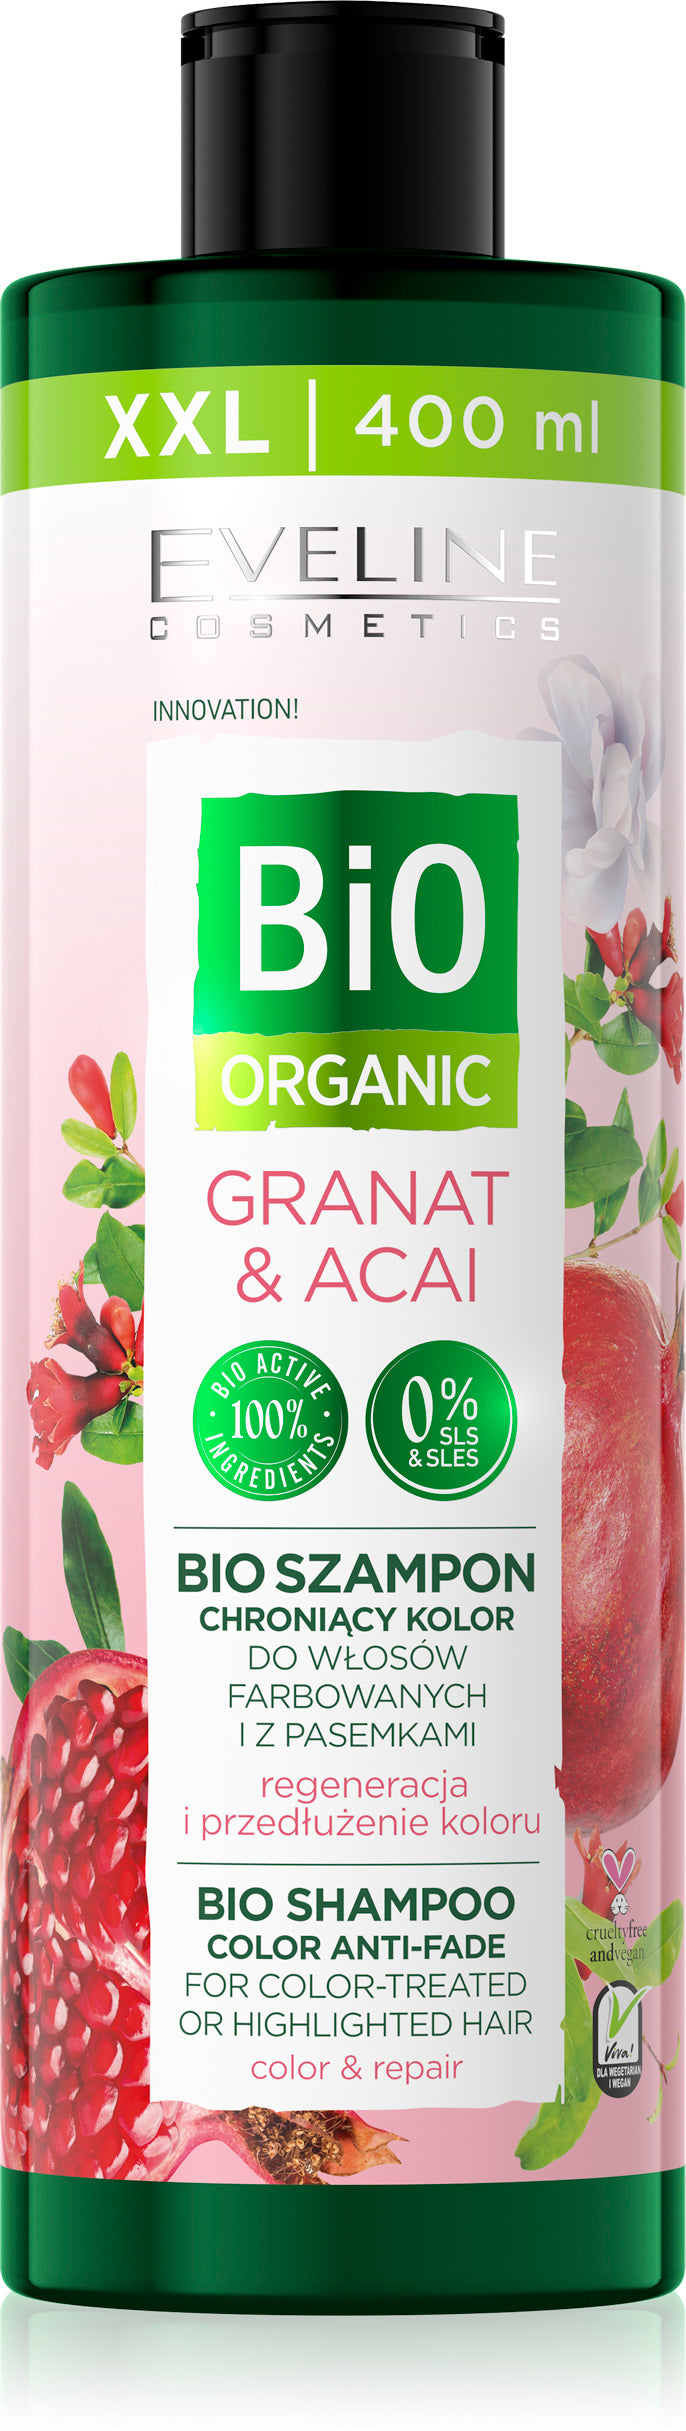 Eveline bio organic šampon - Granat&Acai 400ml